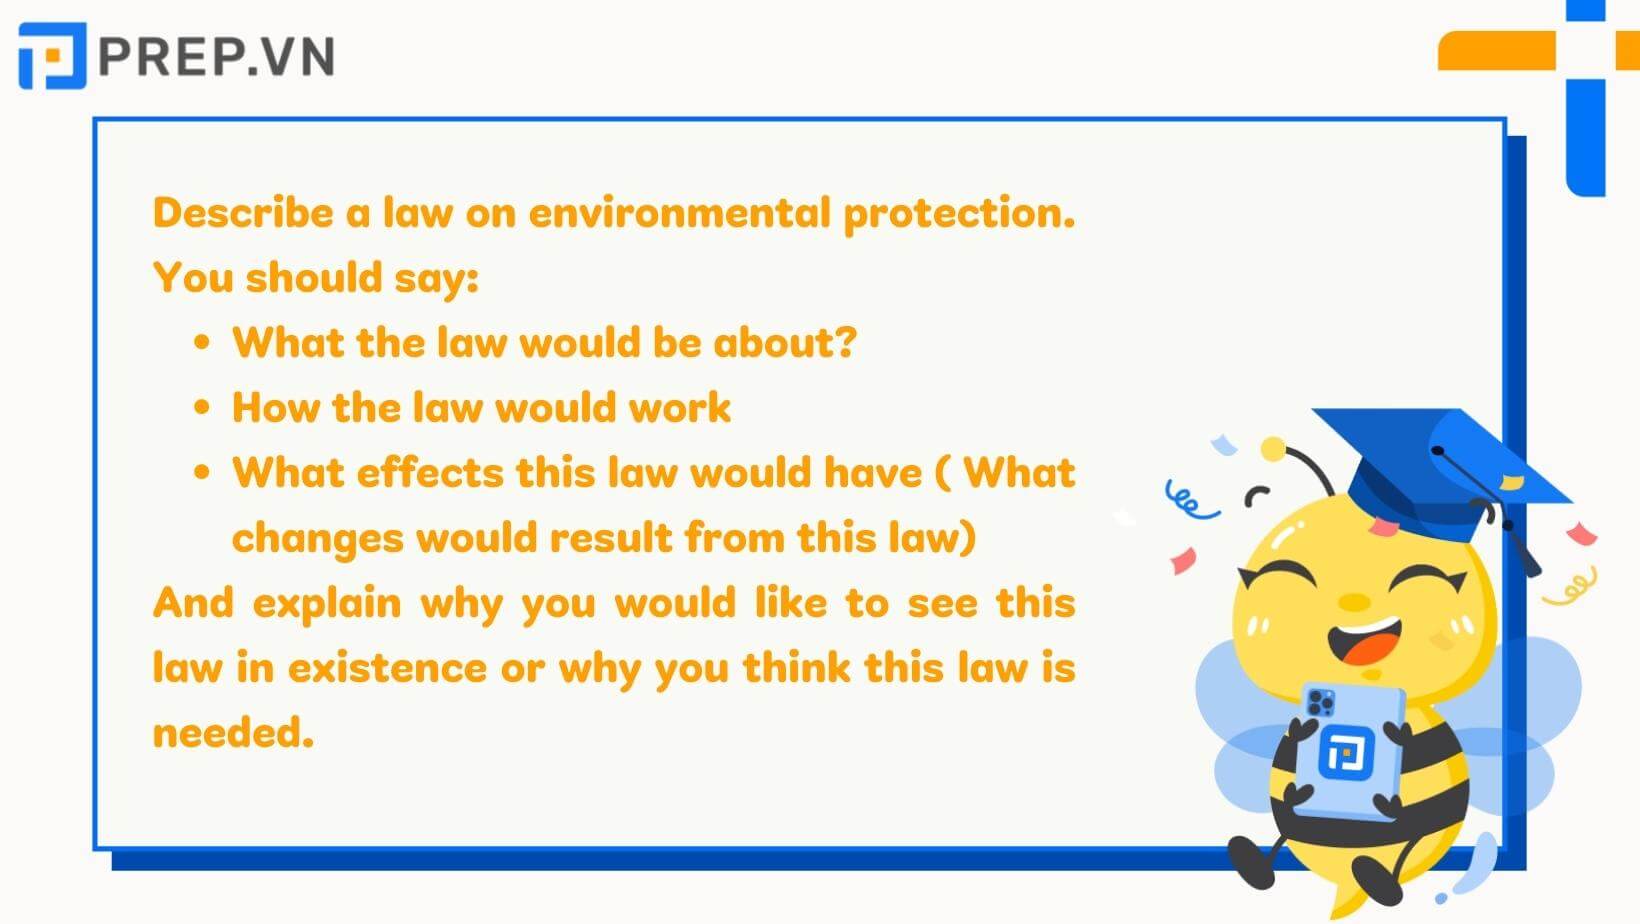 Describe a law on environmental protection.